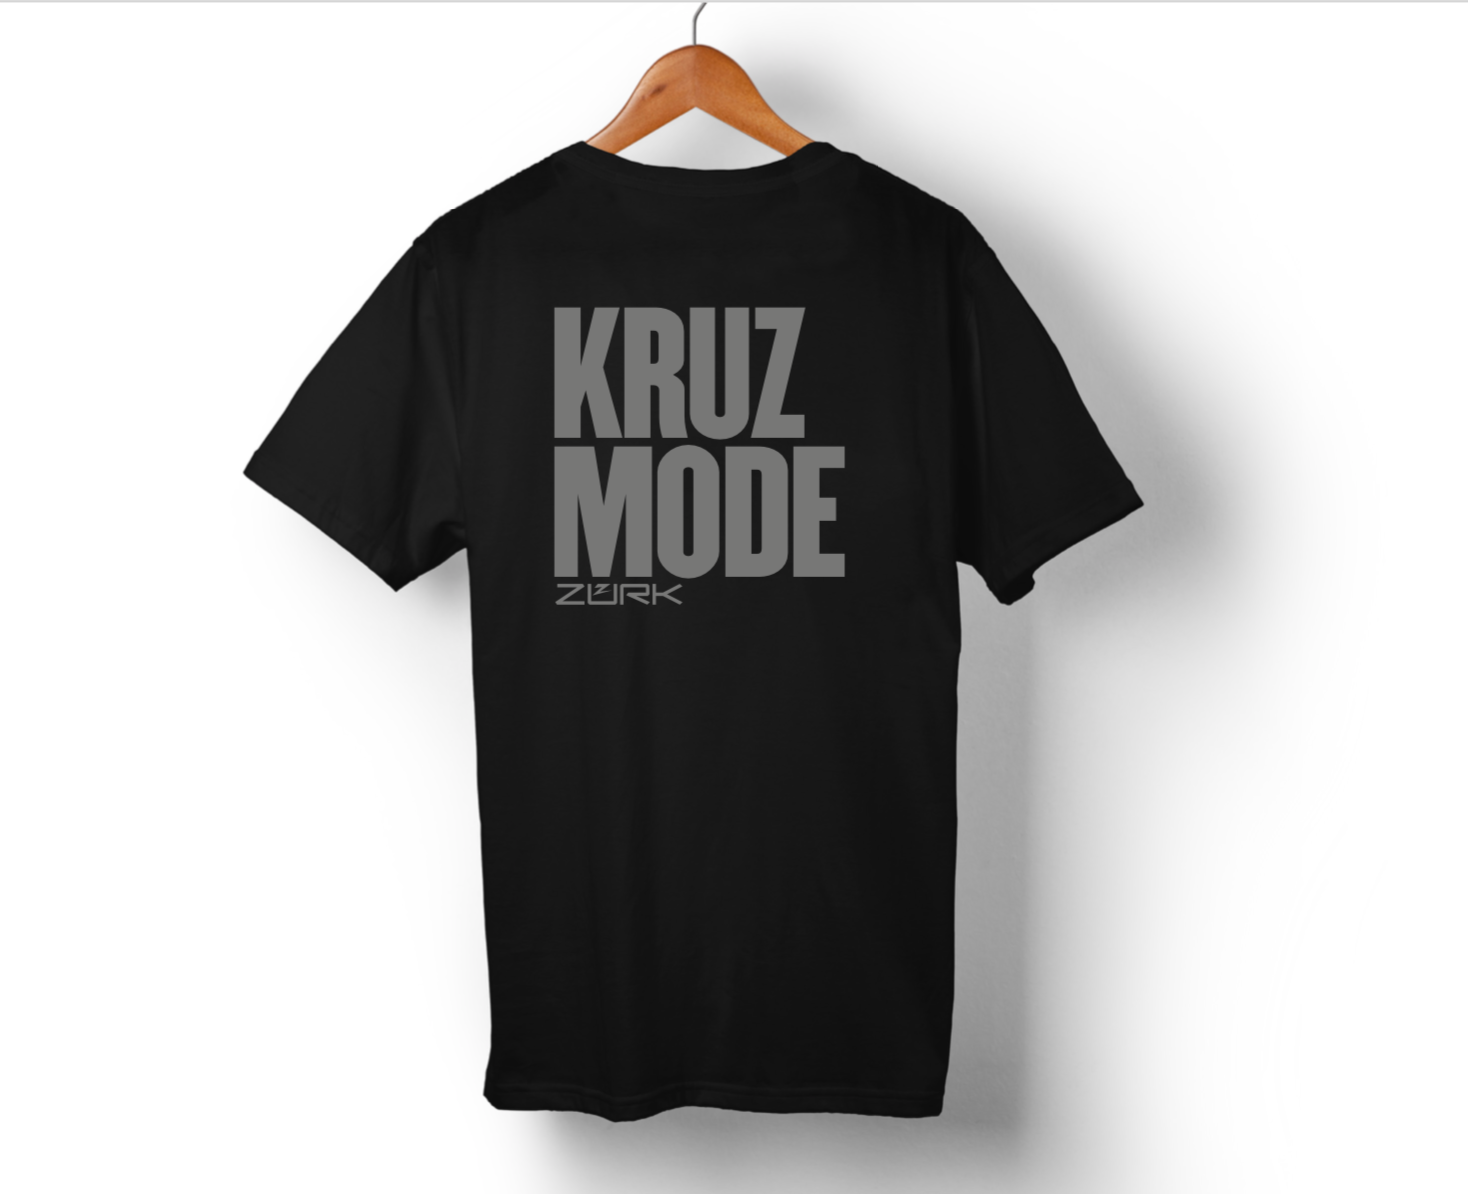 ZURK KRUZ MODE T-SHIRT